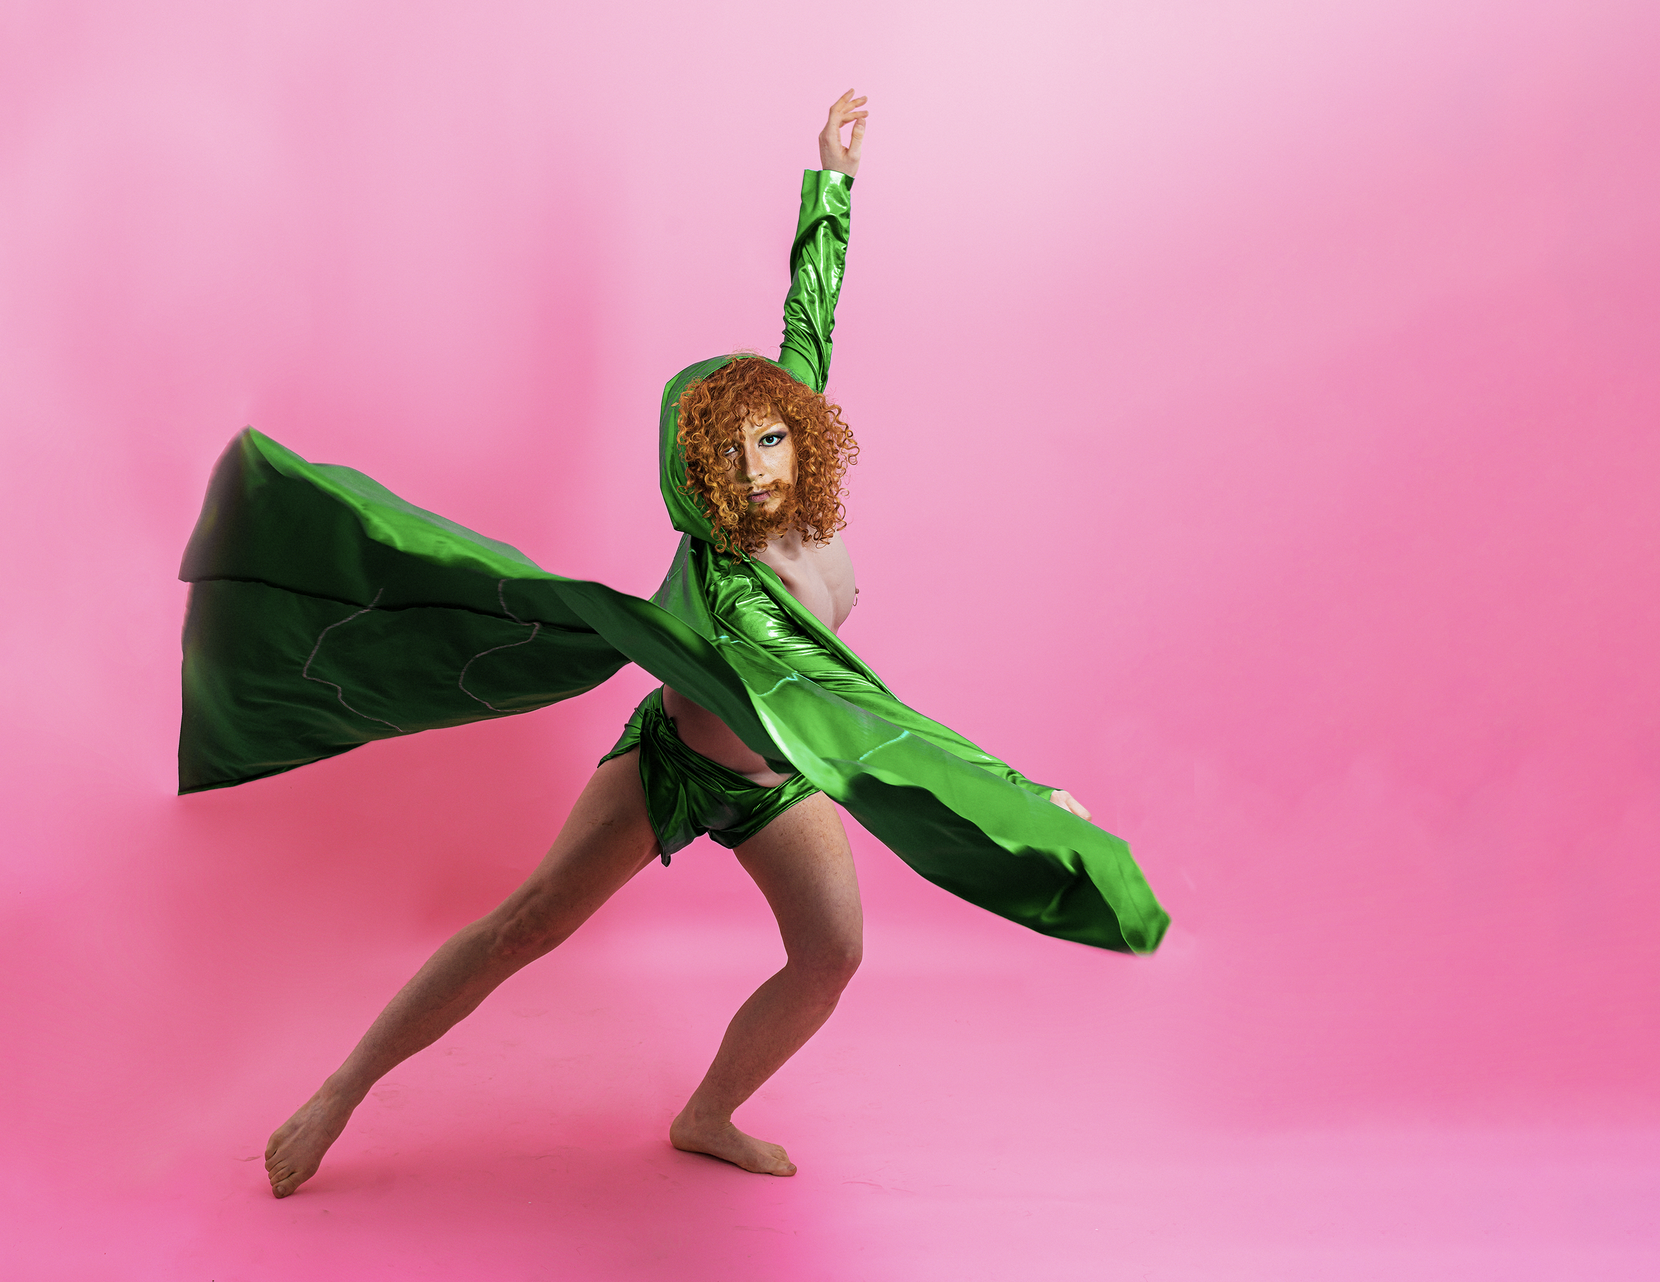 Vor einem pinken Hintergrund tanzt eine Person mit roten Locken, Vollbart und einem knall grünen Cape.